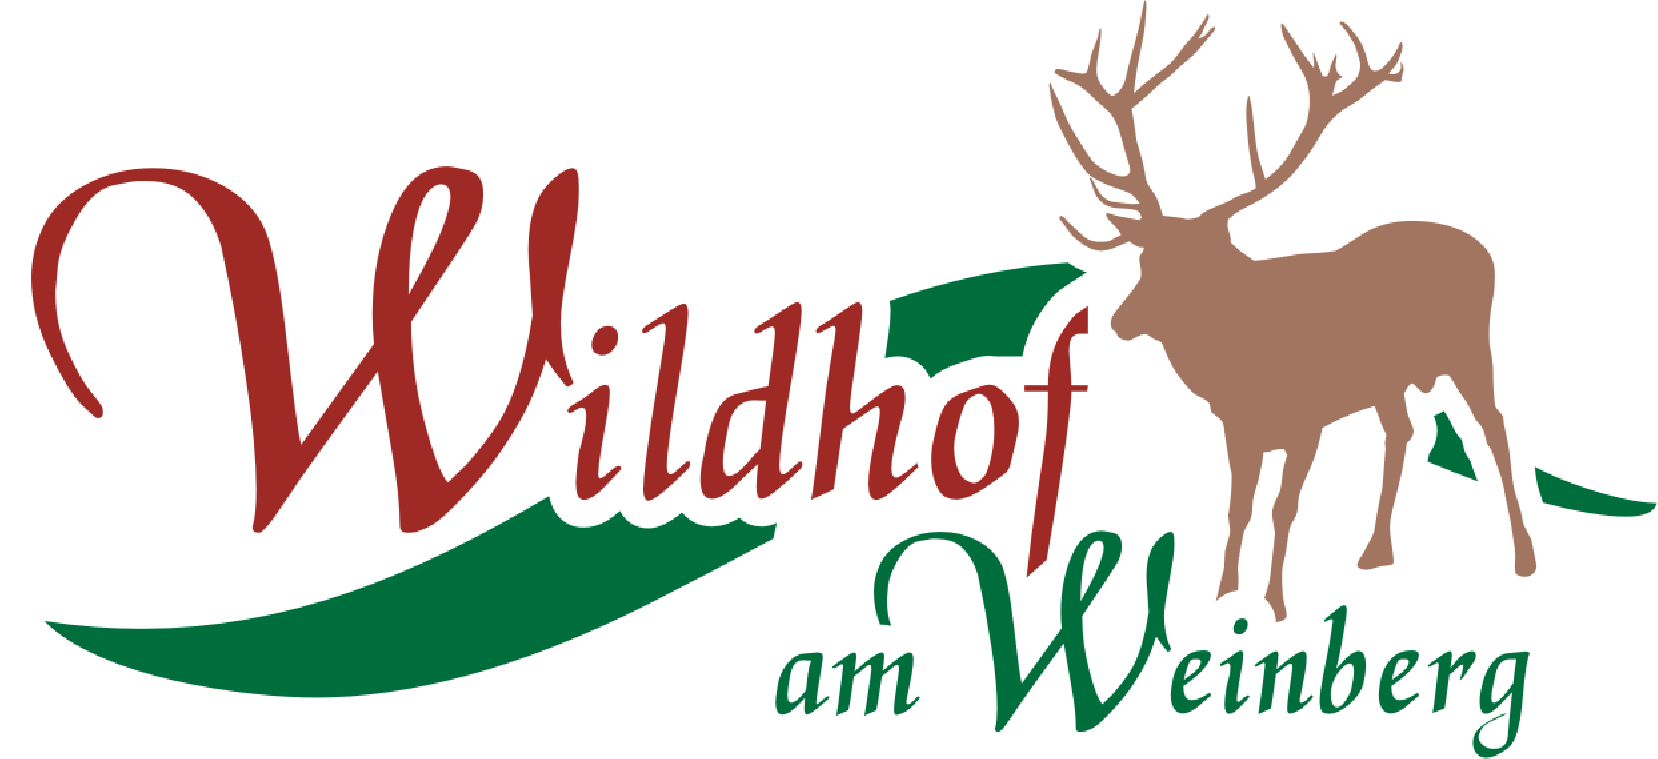 Wildhof am Weinberg logo